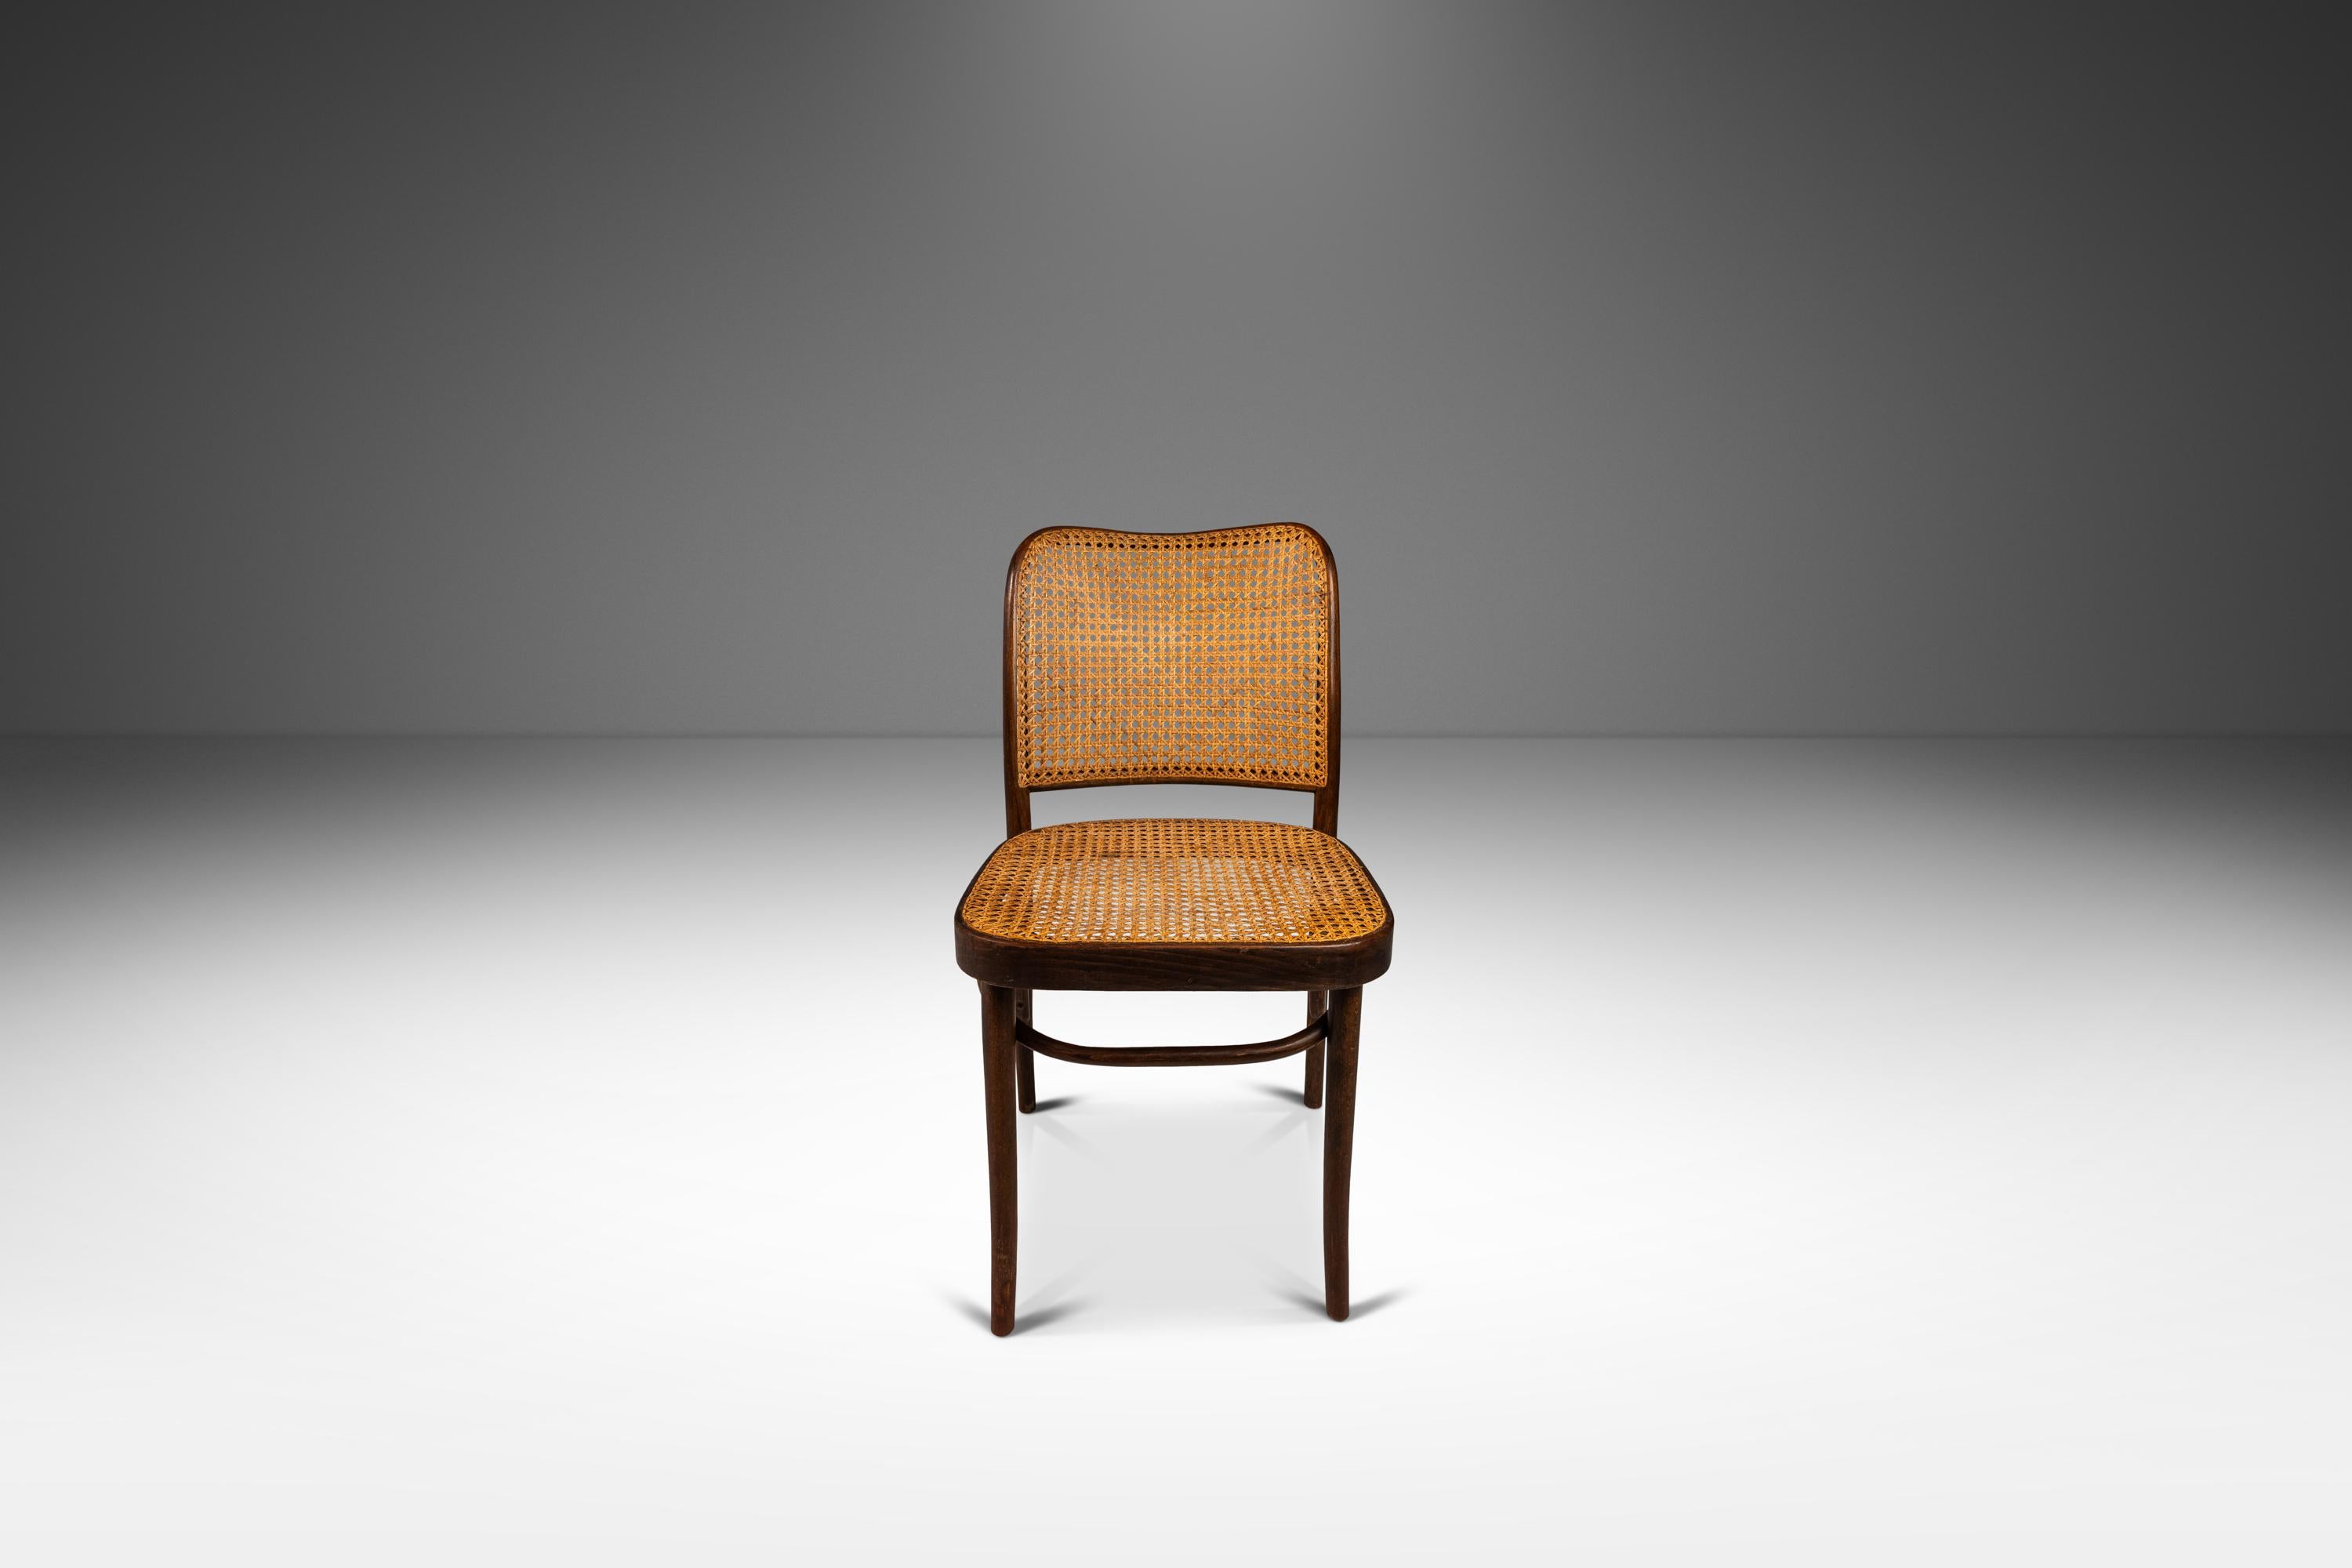 Wir präsentieren einen seltenen und schönen Prager Beistellstuhl Modell 811 aus Bugholz von den bekannten Designern Josef Frank und Josef Hoffmann für Stendig. Dieser in den 1960er Jahren entworfene Stuhl ist ein wahrer Vertreter des modernen